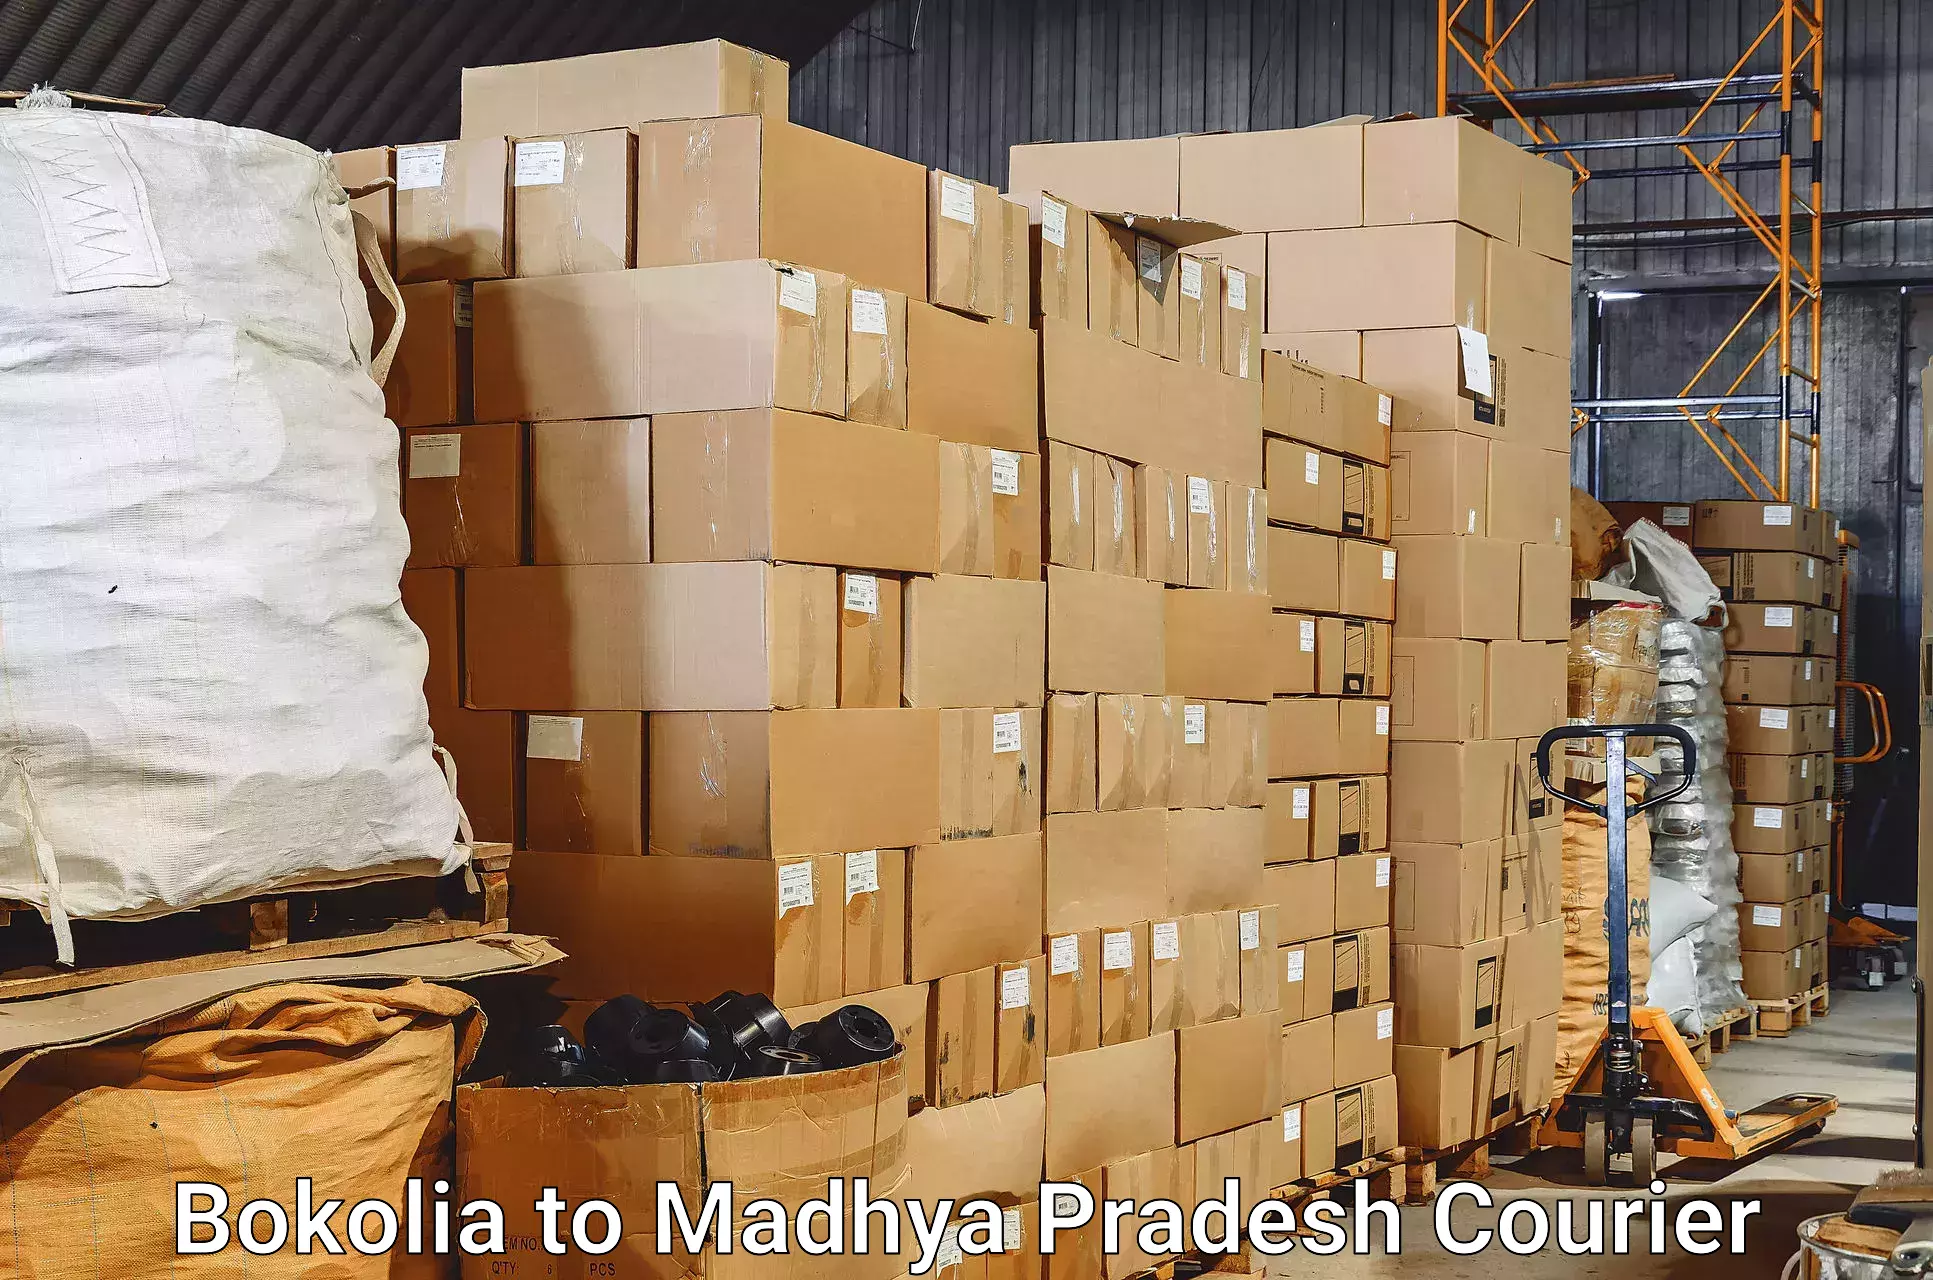 Luggage shipment specialists Bokolia to Rajendragram